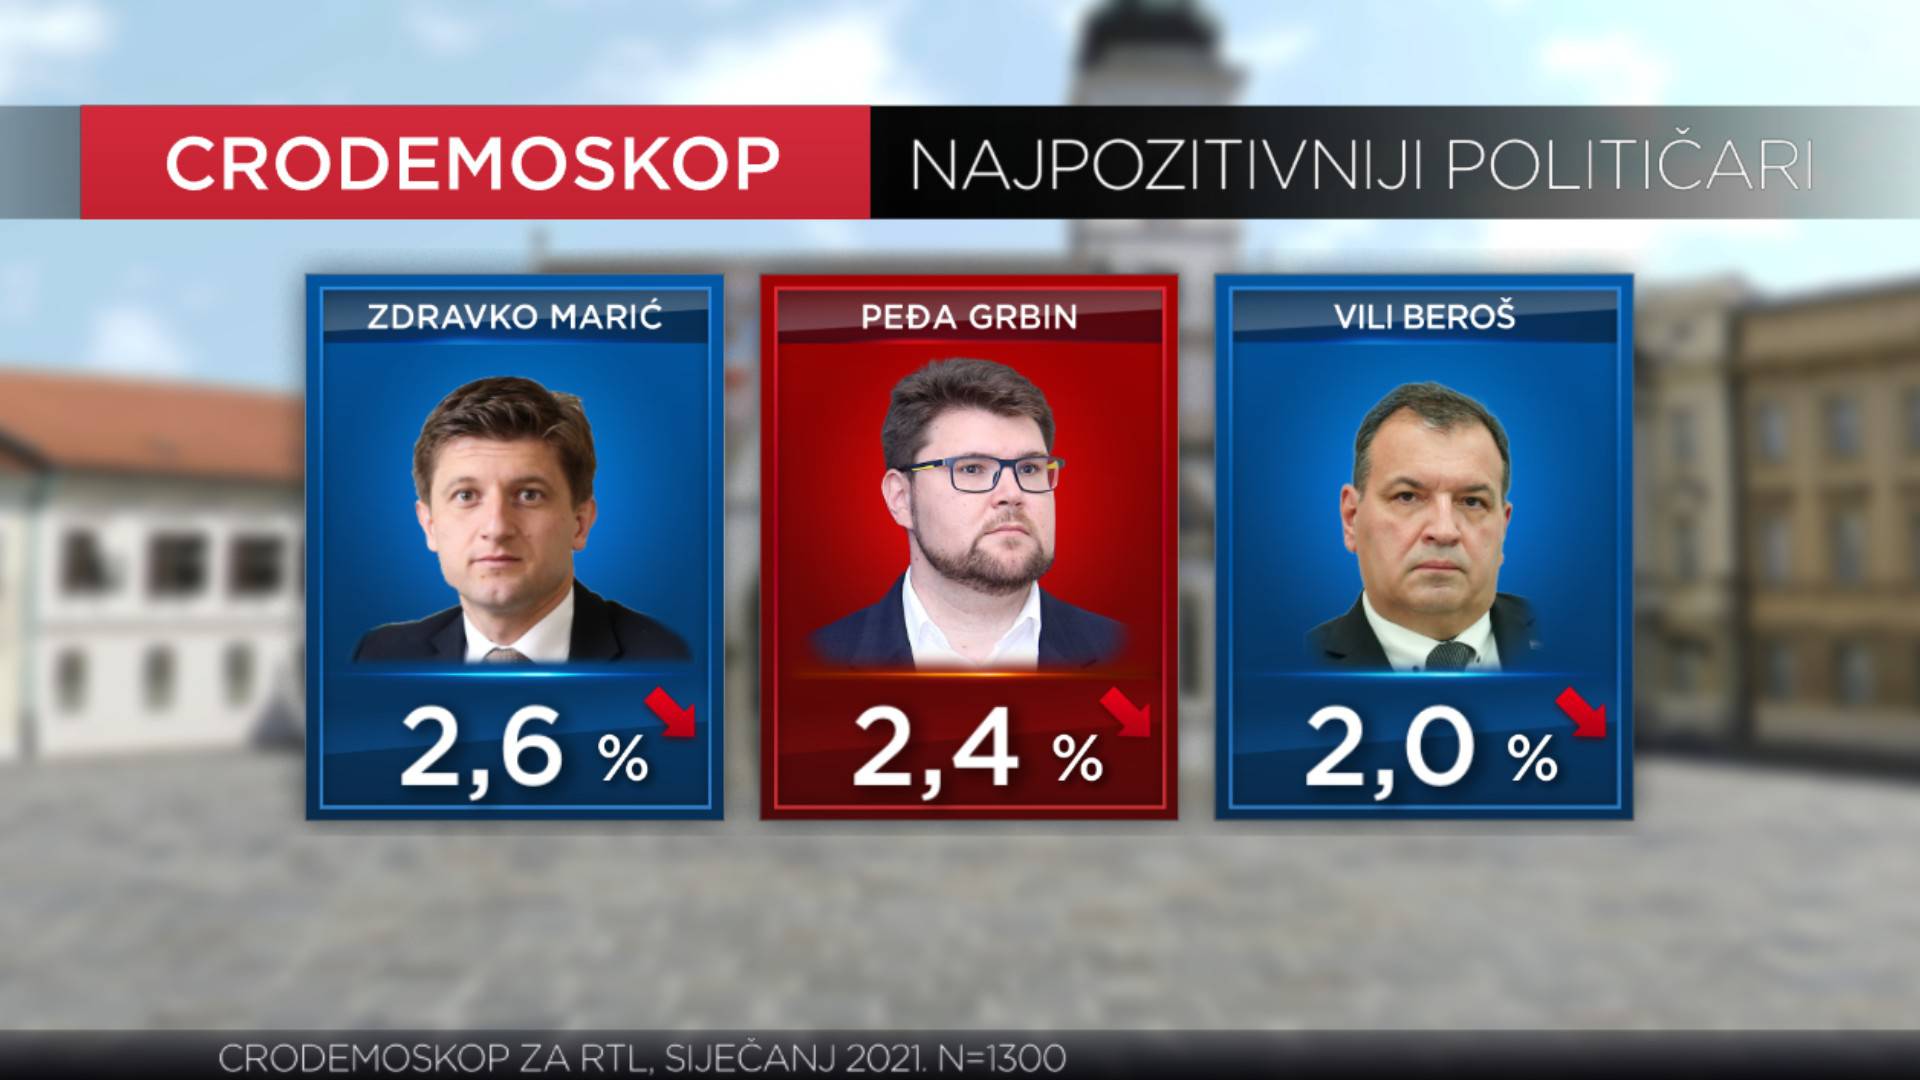 Plenkoviću pao rejting, na treće mjesto najpozitivnijih političara došao Tomašević iz Možemo!